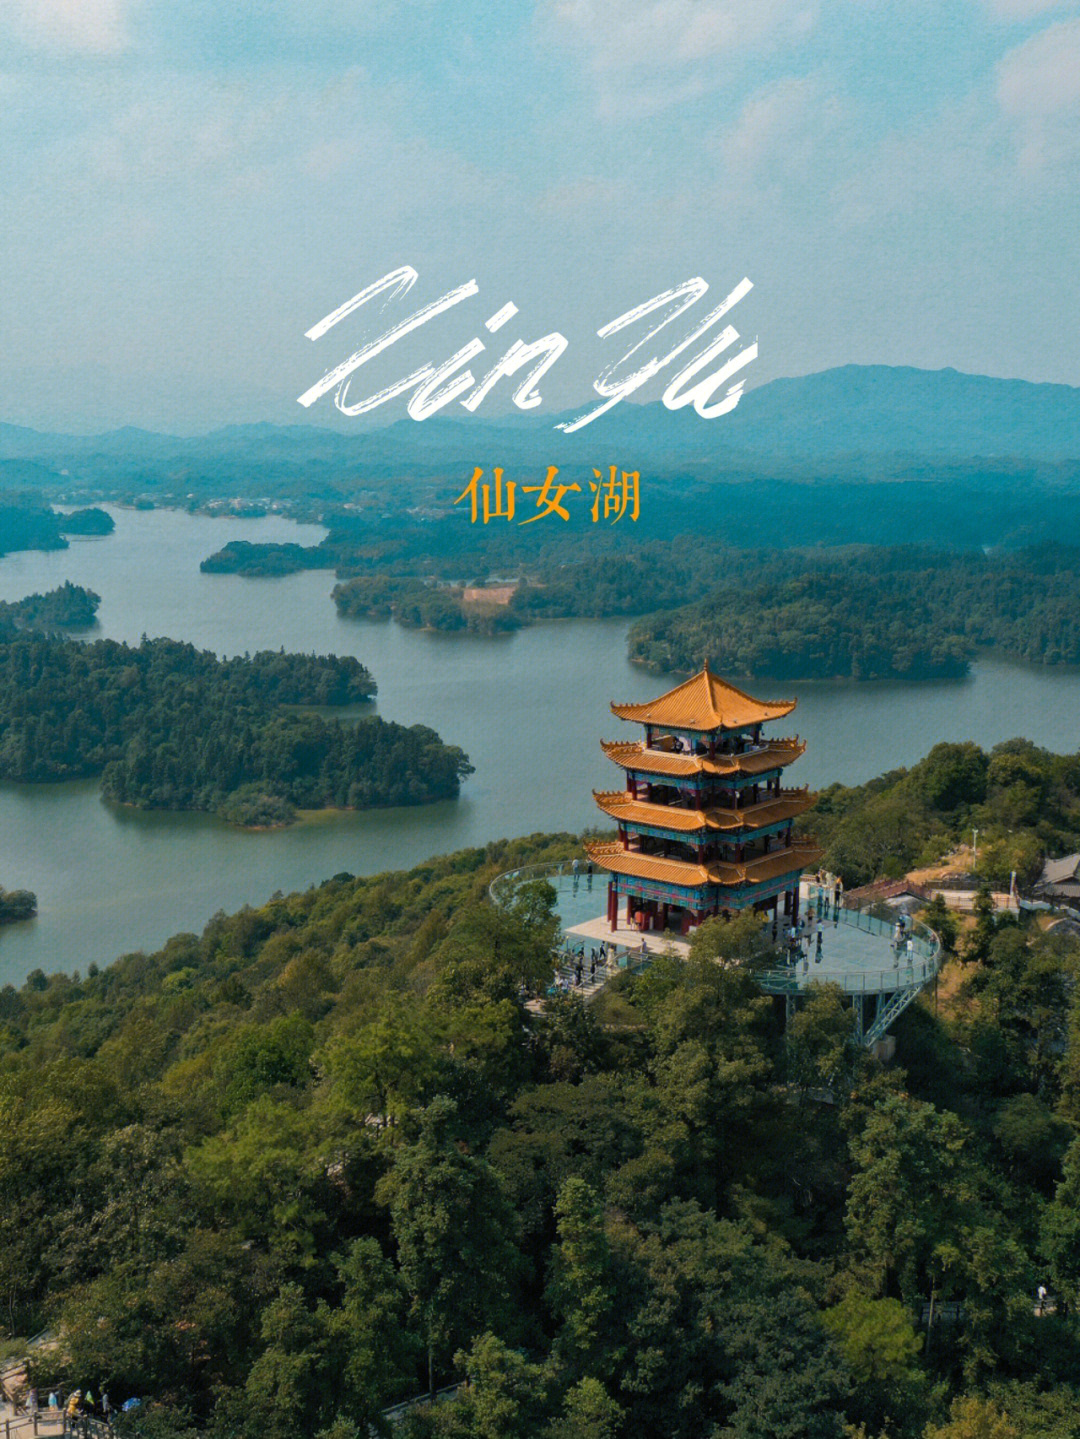 07上海自驾到昆明,沿途宝藏风景 —— 新余·95全国叫仙女湖的